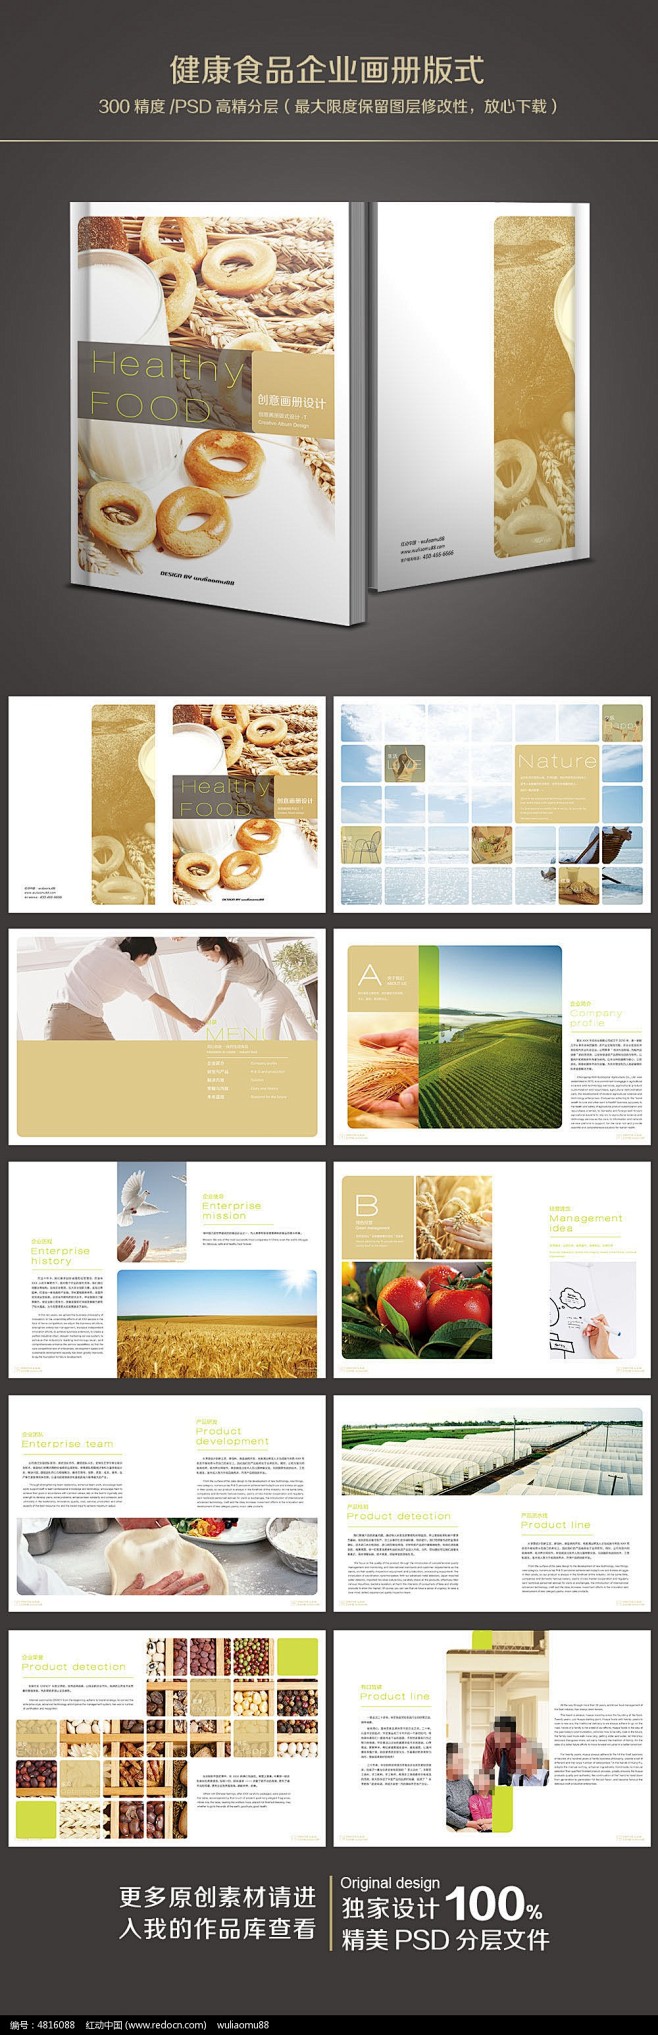 健康食品企业画册版式设计_画册设计/书籍...